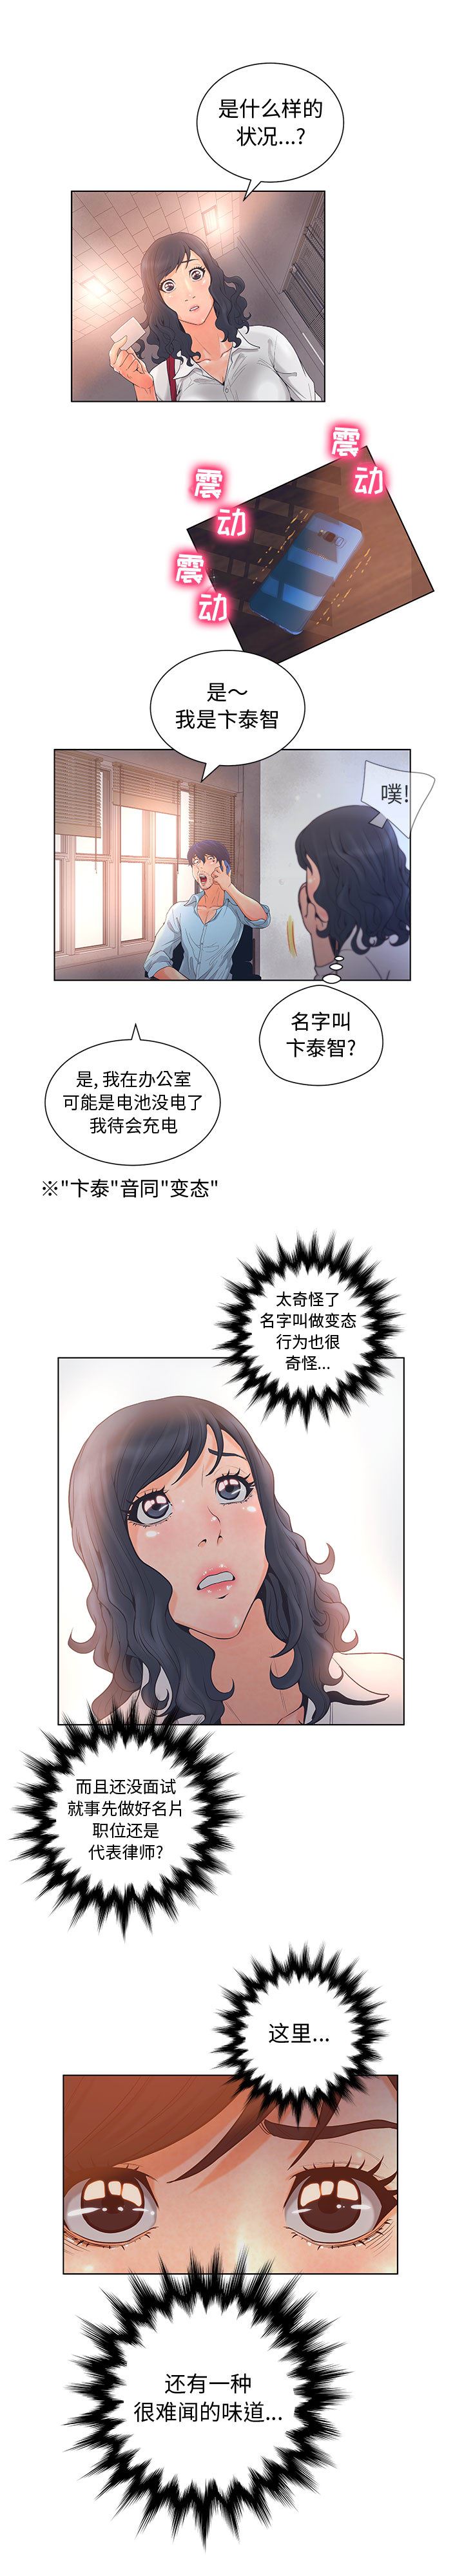 韩国污漫画 誣告 1 17